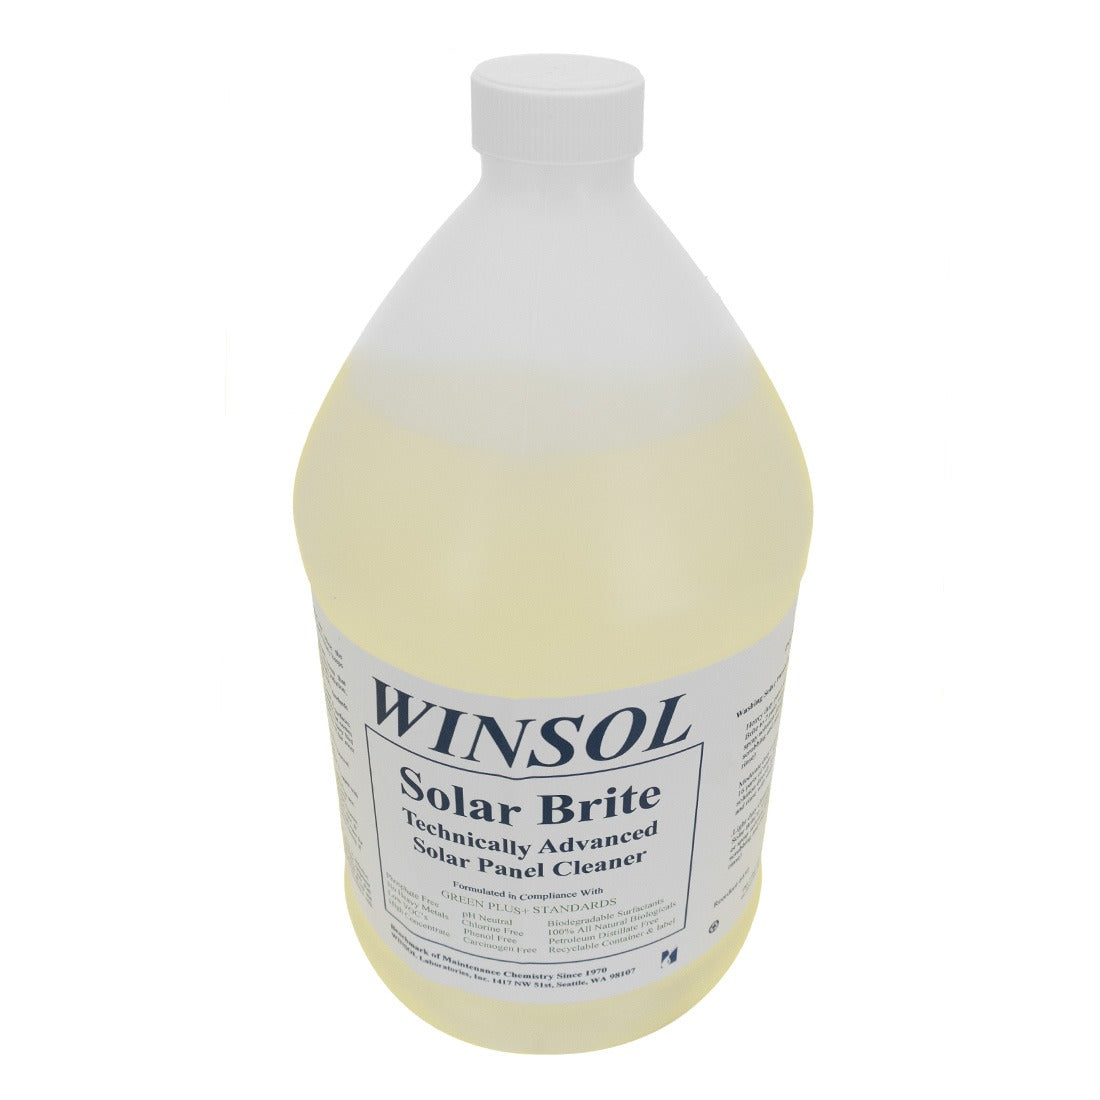 Winsol Solar Brite Top View